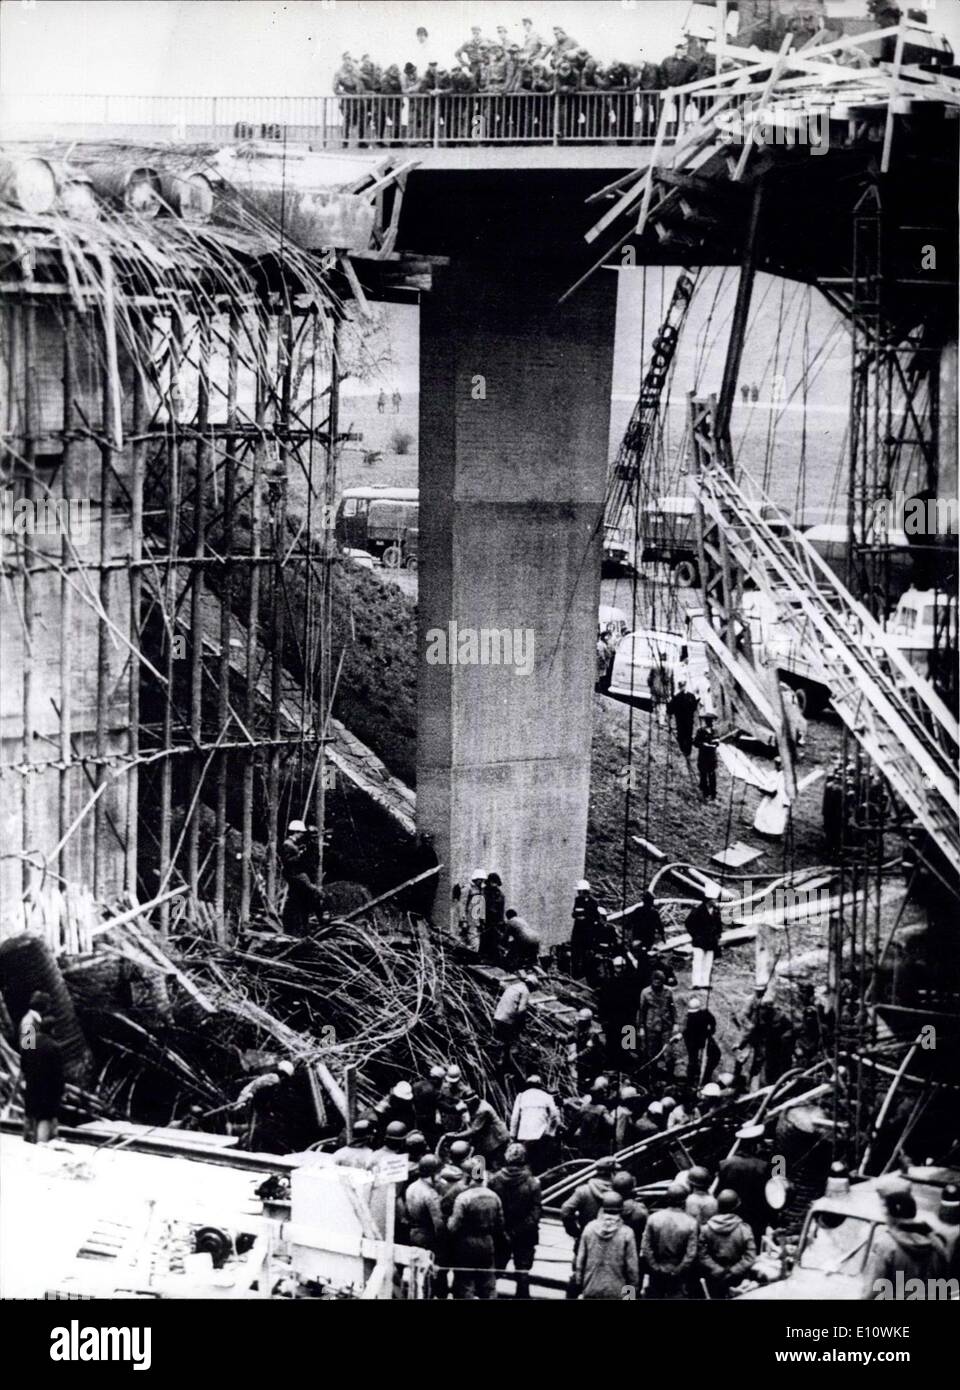 Maggio 02, 1974 - nove morti da un ponte Crash a Kempten, Baviera: Nelle prime ore del mattino di Aprile 30, 1974 il ponte autostradale ''Leubastal'' vicino Kemprten, la Baviera ha abbattuto e fino ad ora la causa non è chiara l'incidente è accaduto durante la concertazione di opere come autocarri riempiti di calcestruzzo fresco nel fasciame insieme con 500 tonnellate di cemento e rubare, 22 operai della costruzione sono state tirate verso il basso. Nove di essi soffocato nella concretezza e tredici, la maggior parte dei quali gravemente feriti, potrebbero essere salvati. Mostra fotografica di nove persone tra le travi di acciaio e calcestruzzo. Foto Stock